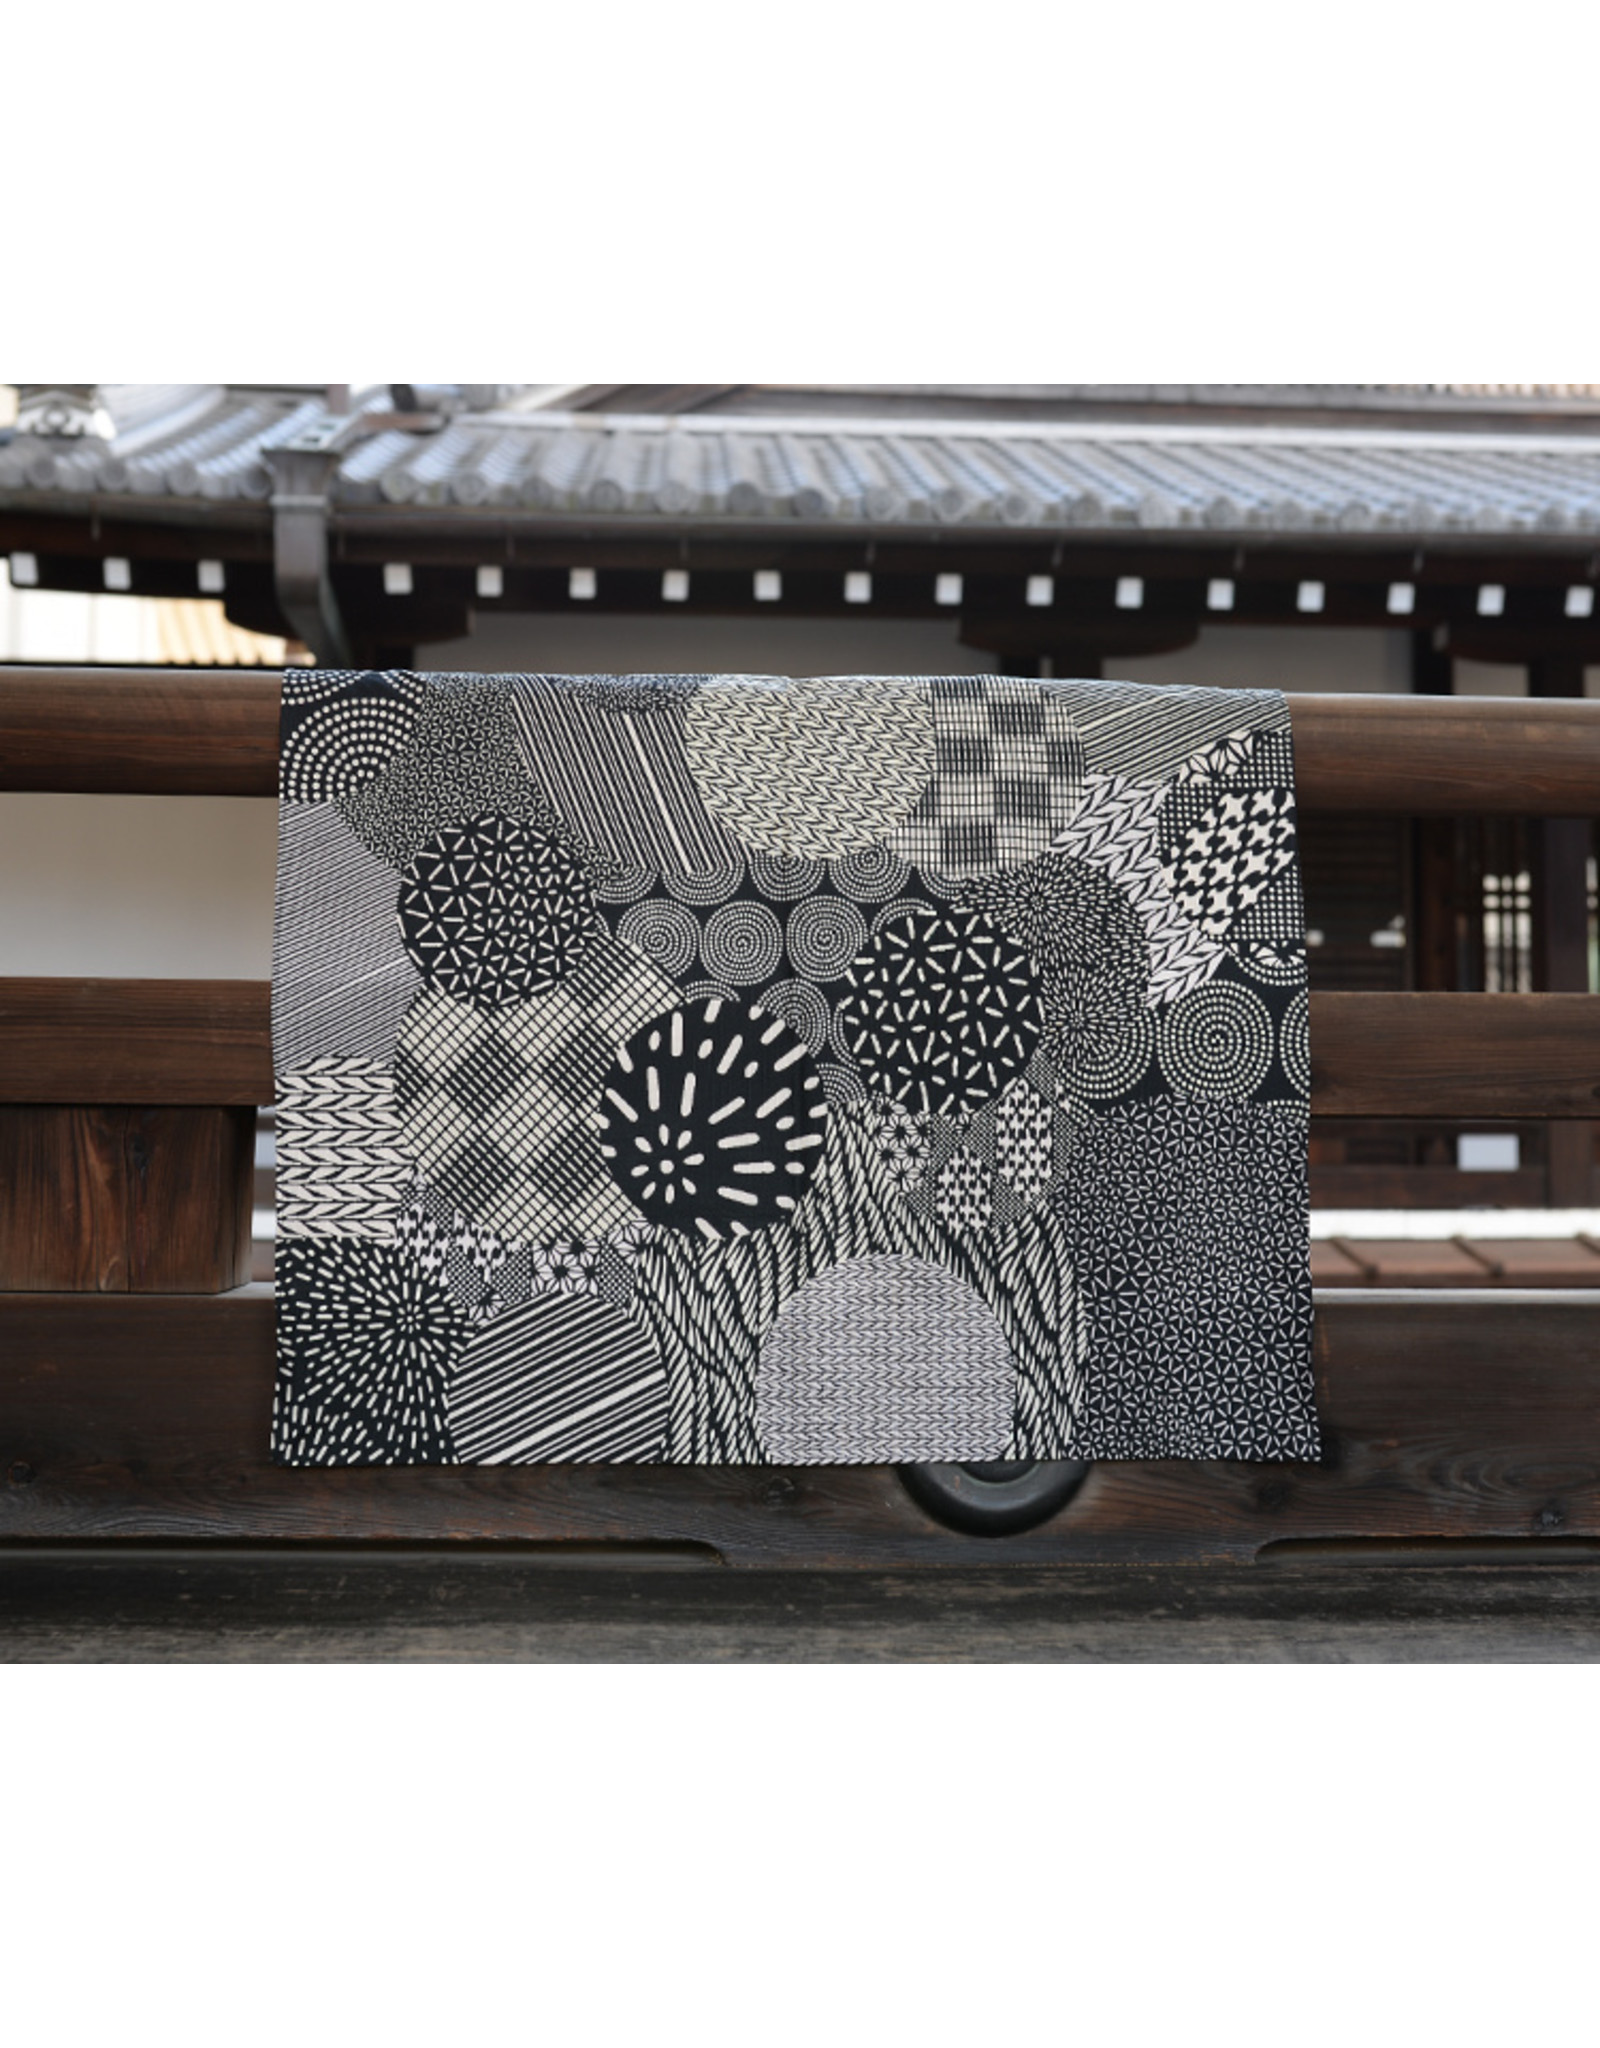 Mashu Kyoto FUROSHIKI -Kreise black 100% Baumwolle im Siebdruck